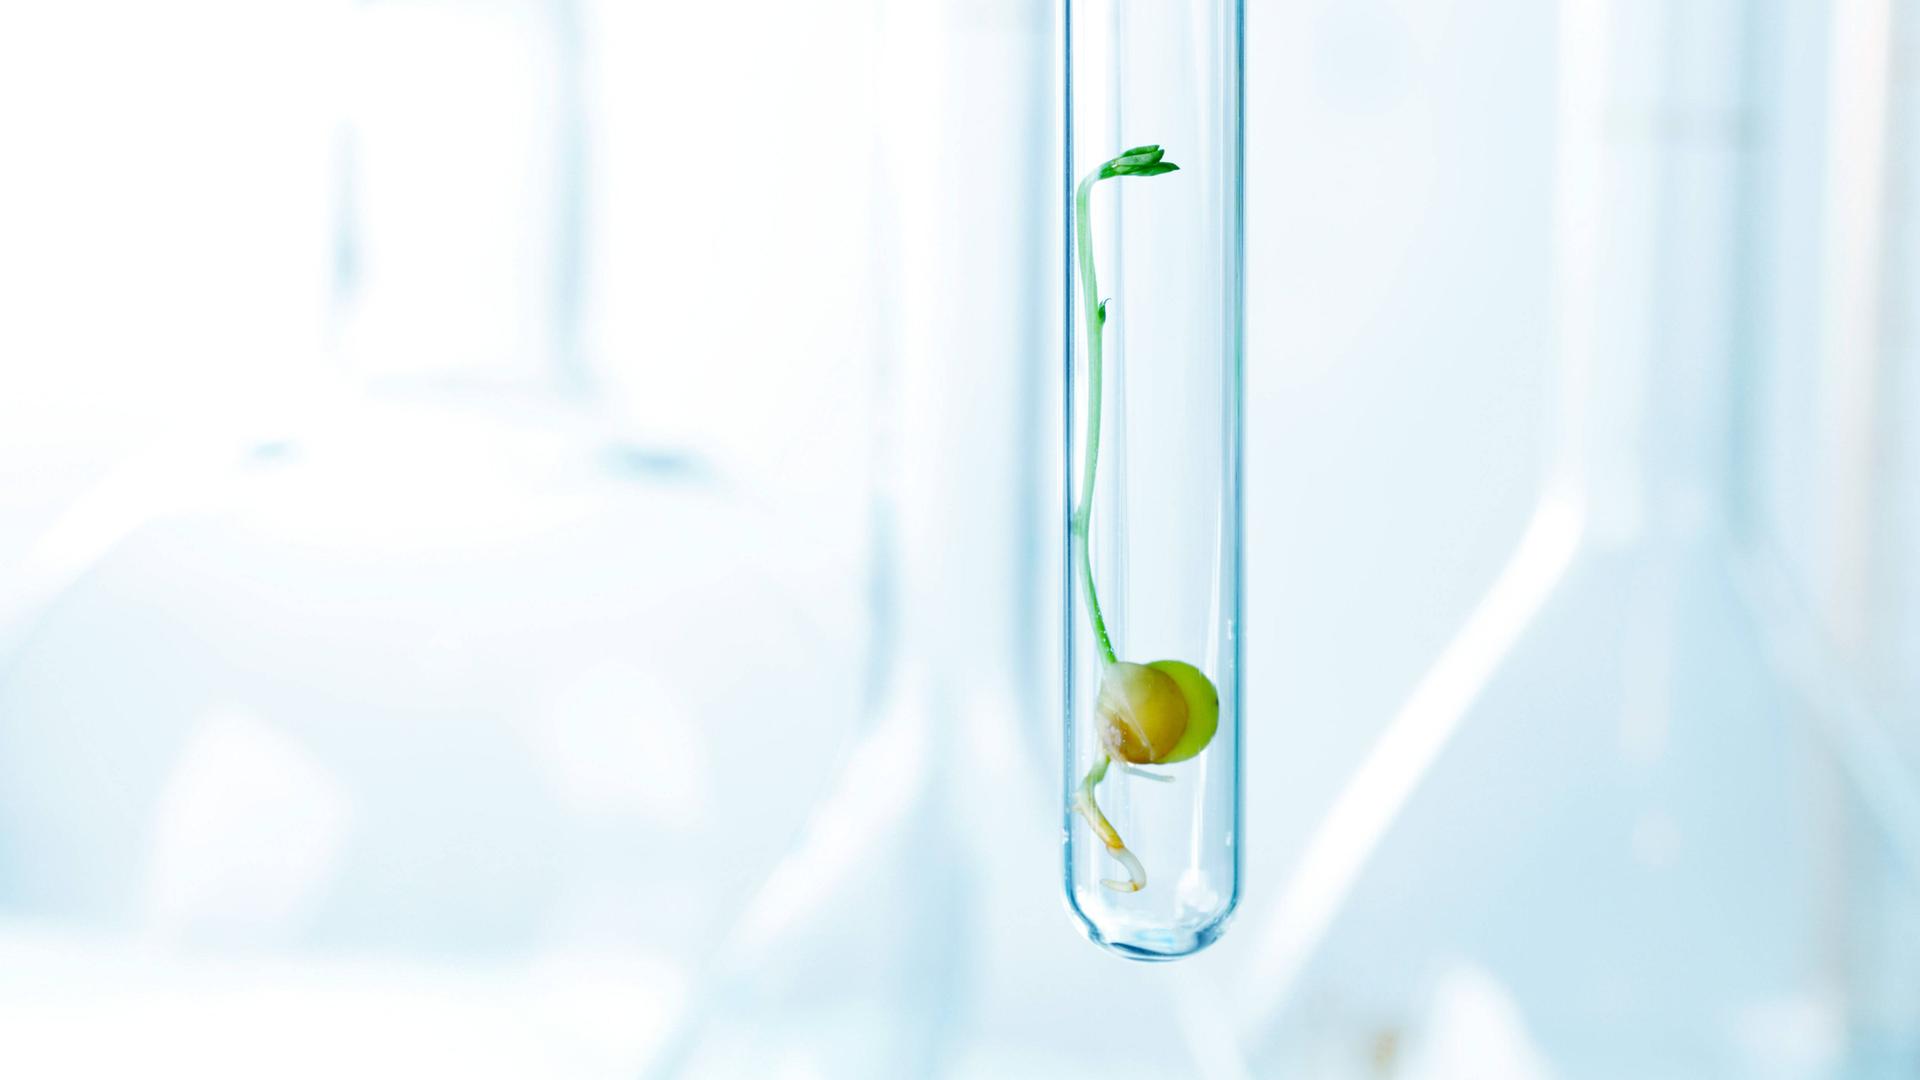 Ein Keimling in einem Reagenzglas, eine gentechnisch veränderte Pflanze, 2021.